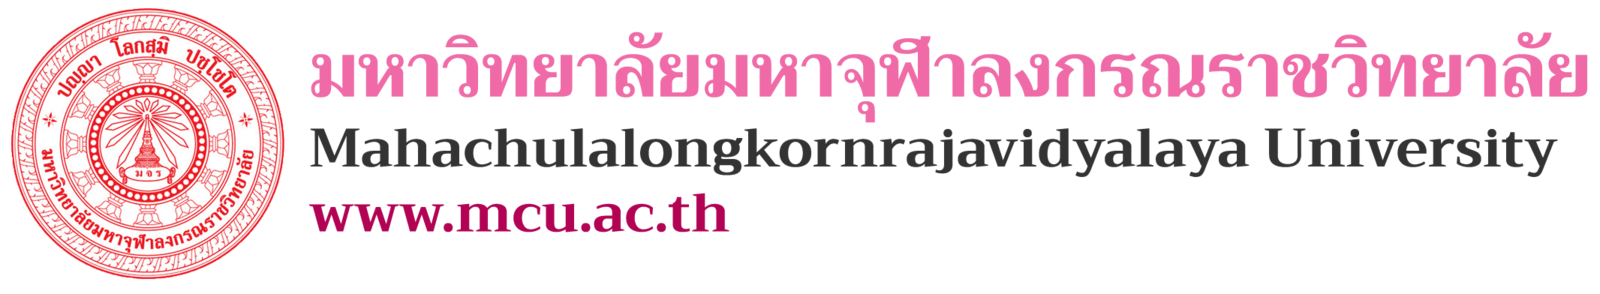 logo-v6-th (1).png